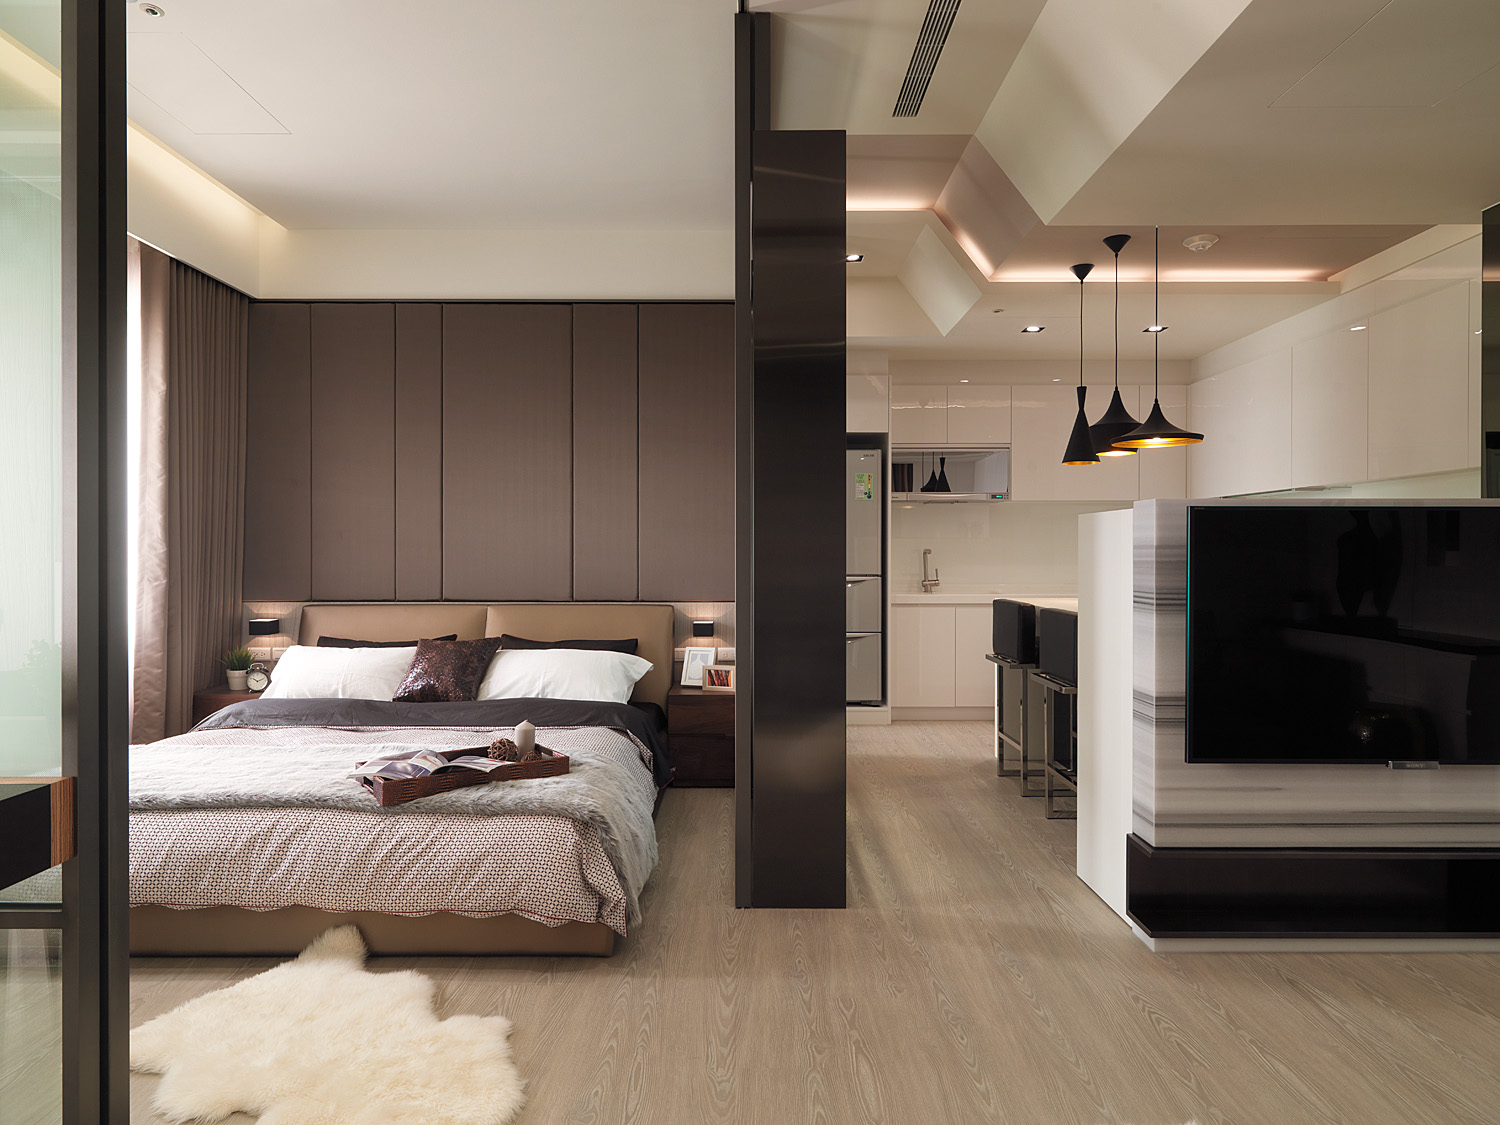 主卧配色优雅，配以舒适的床品装饰，营造出温馨、安适的空间氛围。